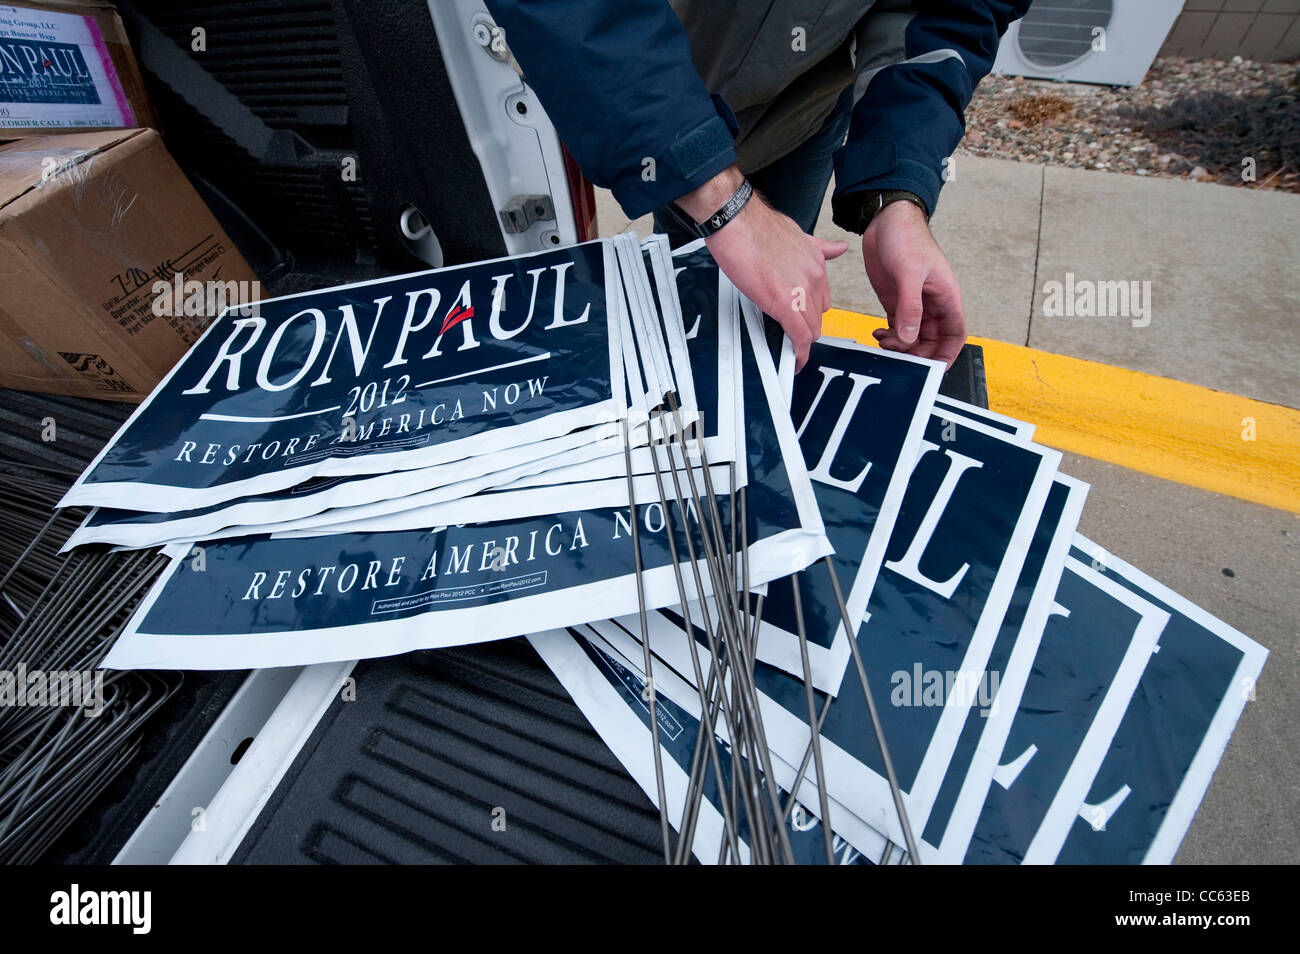 Sostenitore del candidato presidenziale repubblicano Ron Paul mette insieme i segni di una campagna nel rally di Le Mars Iowa Foto Stock